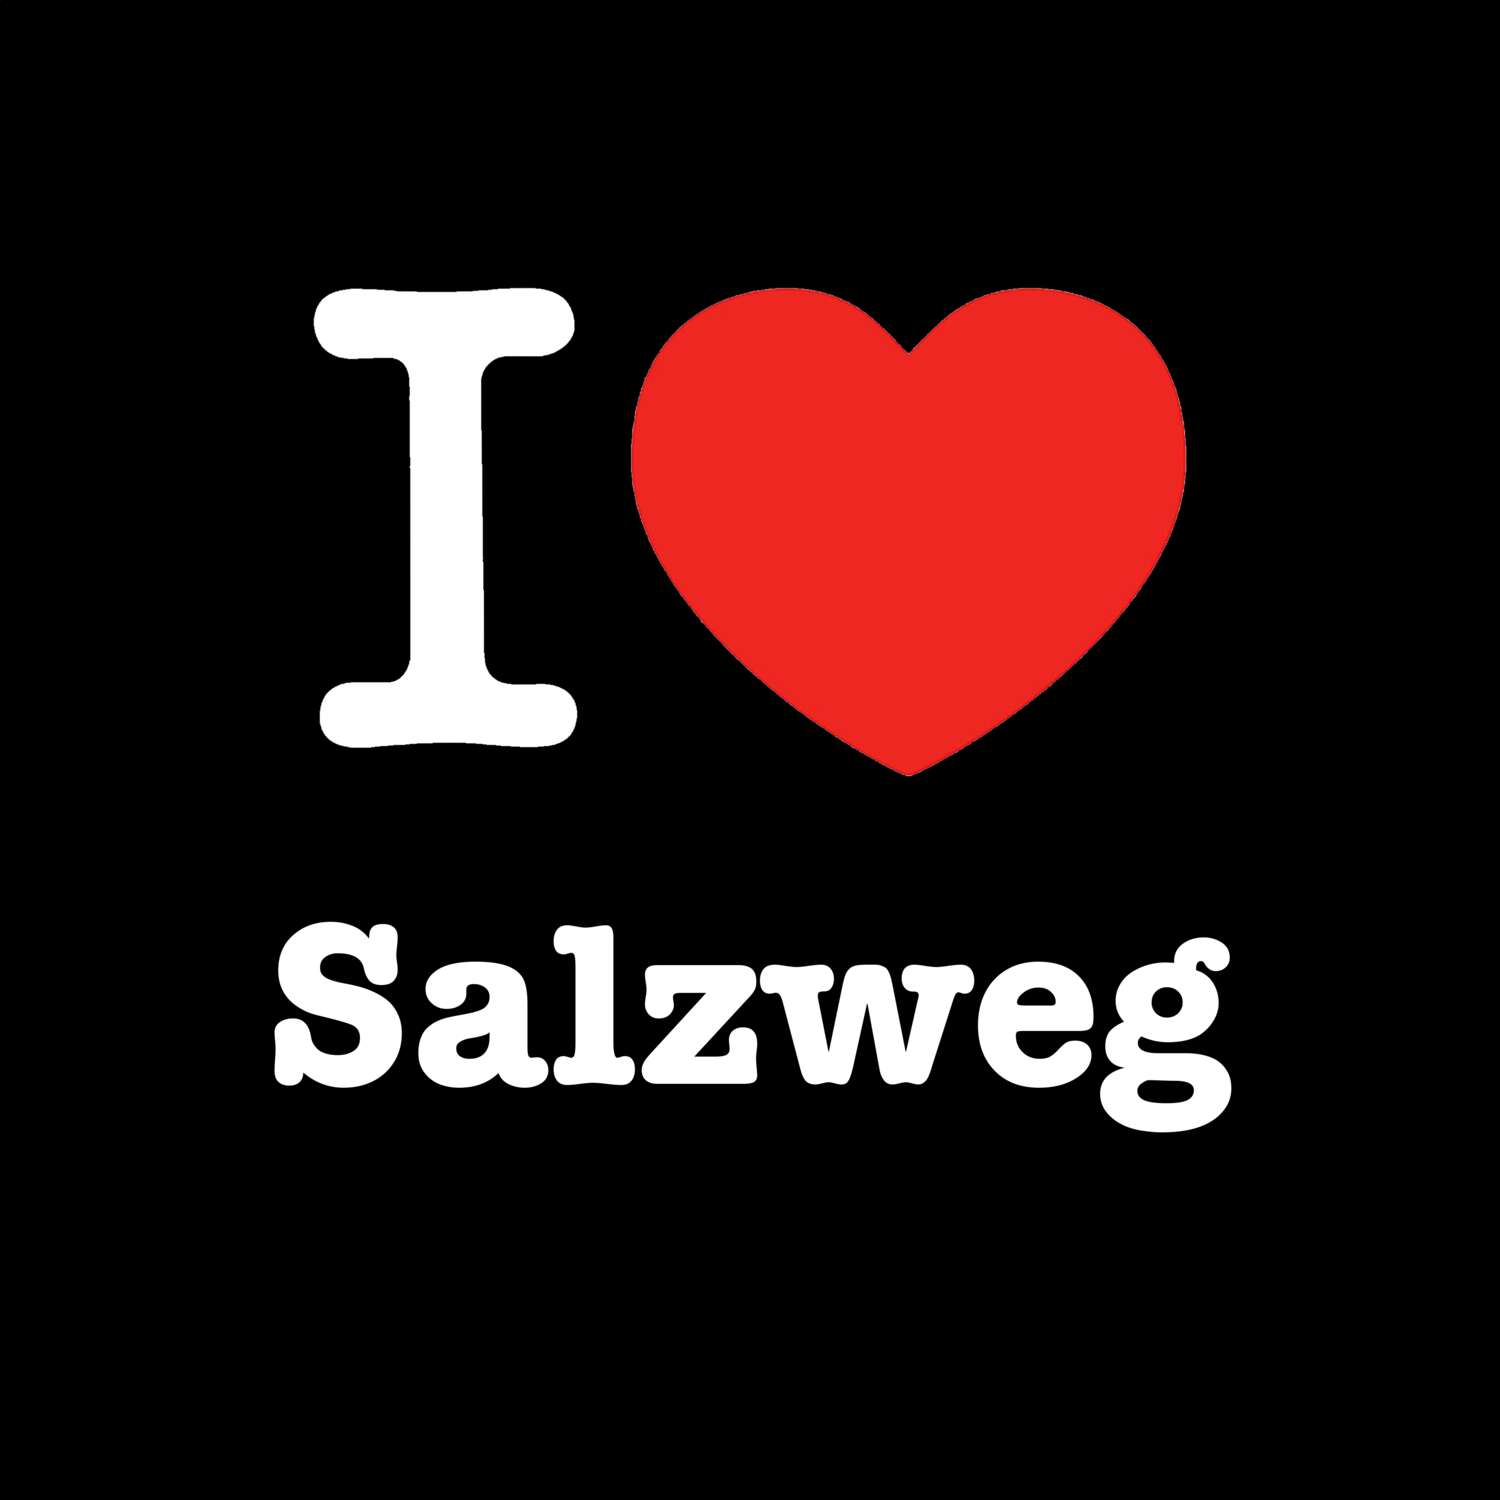 Salzweg T-Shirt »I love«